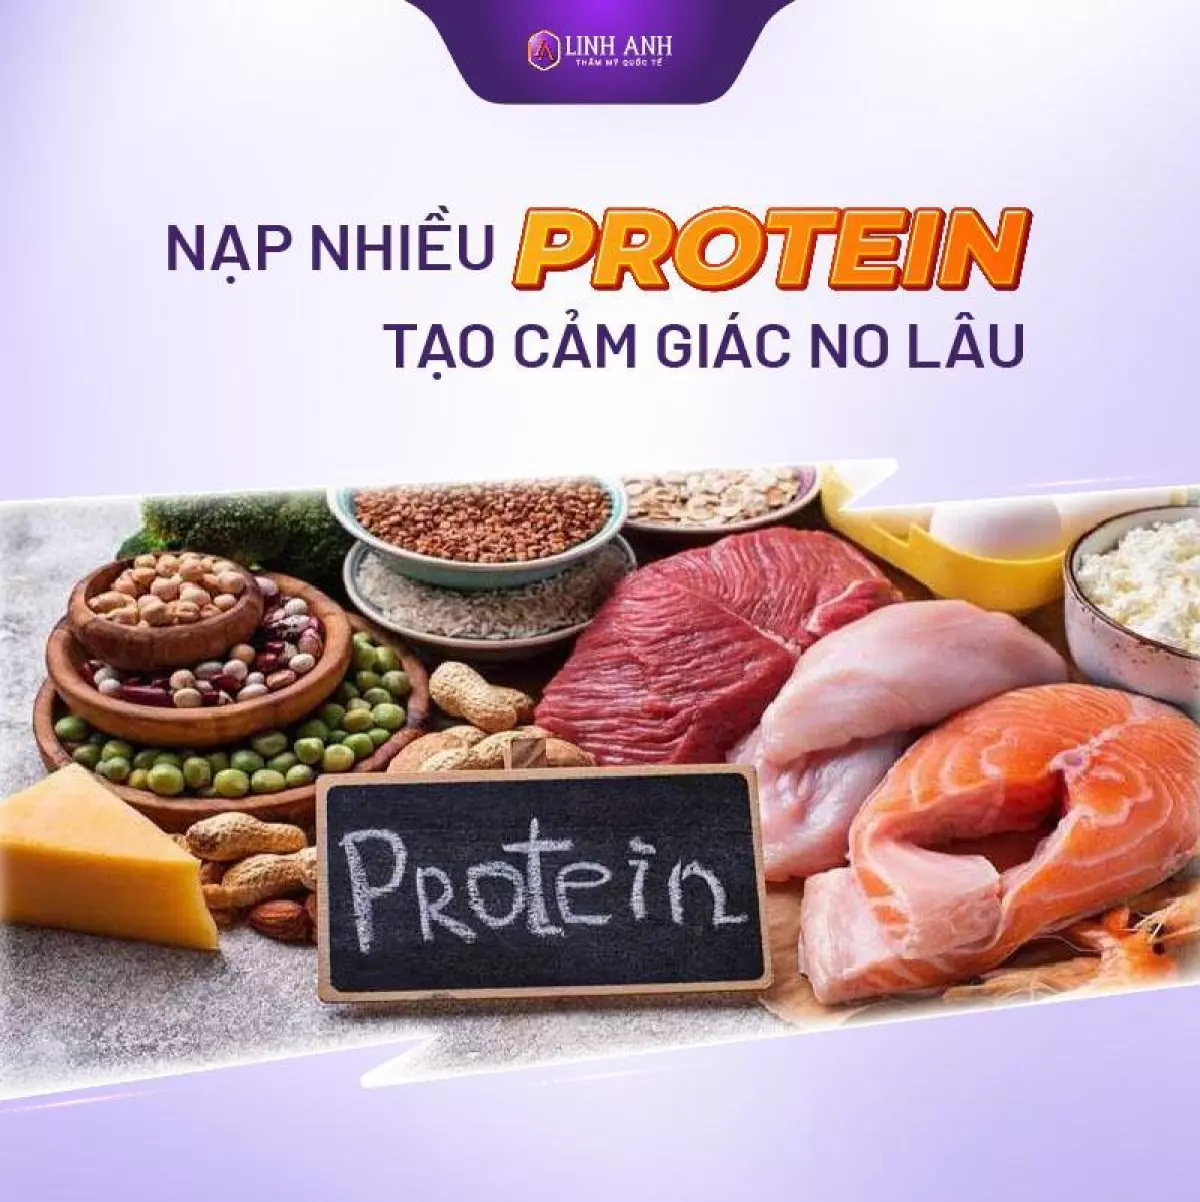 Nạp nhiều protein tạo cảm giác no lâu